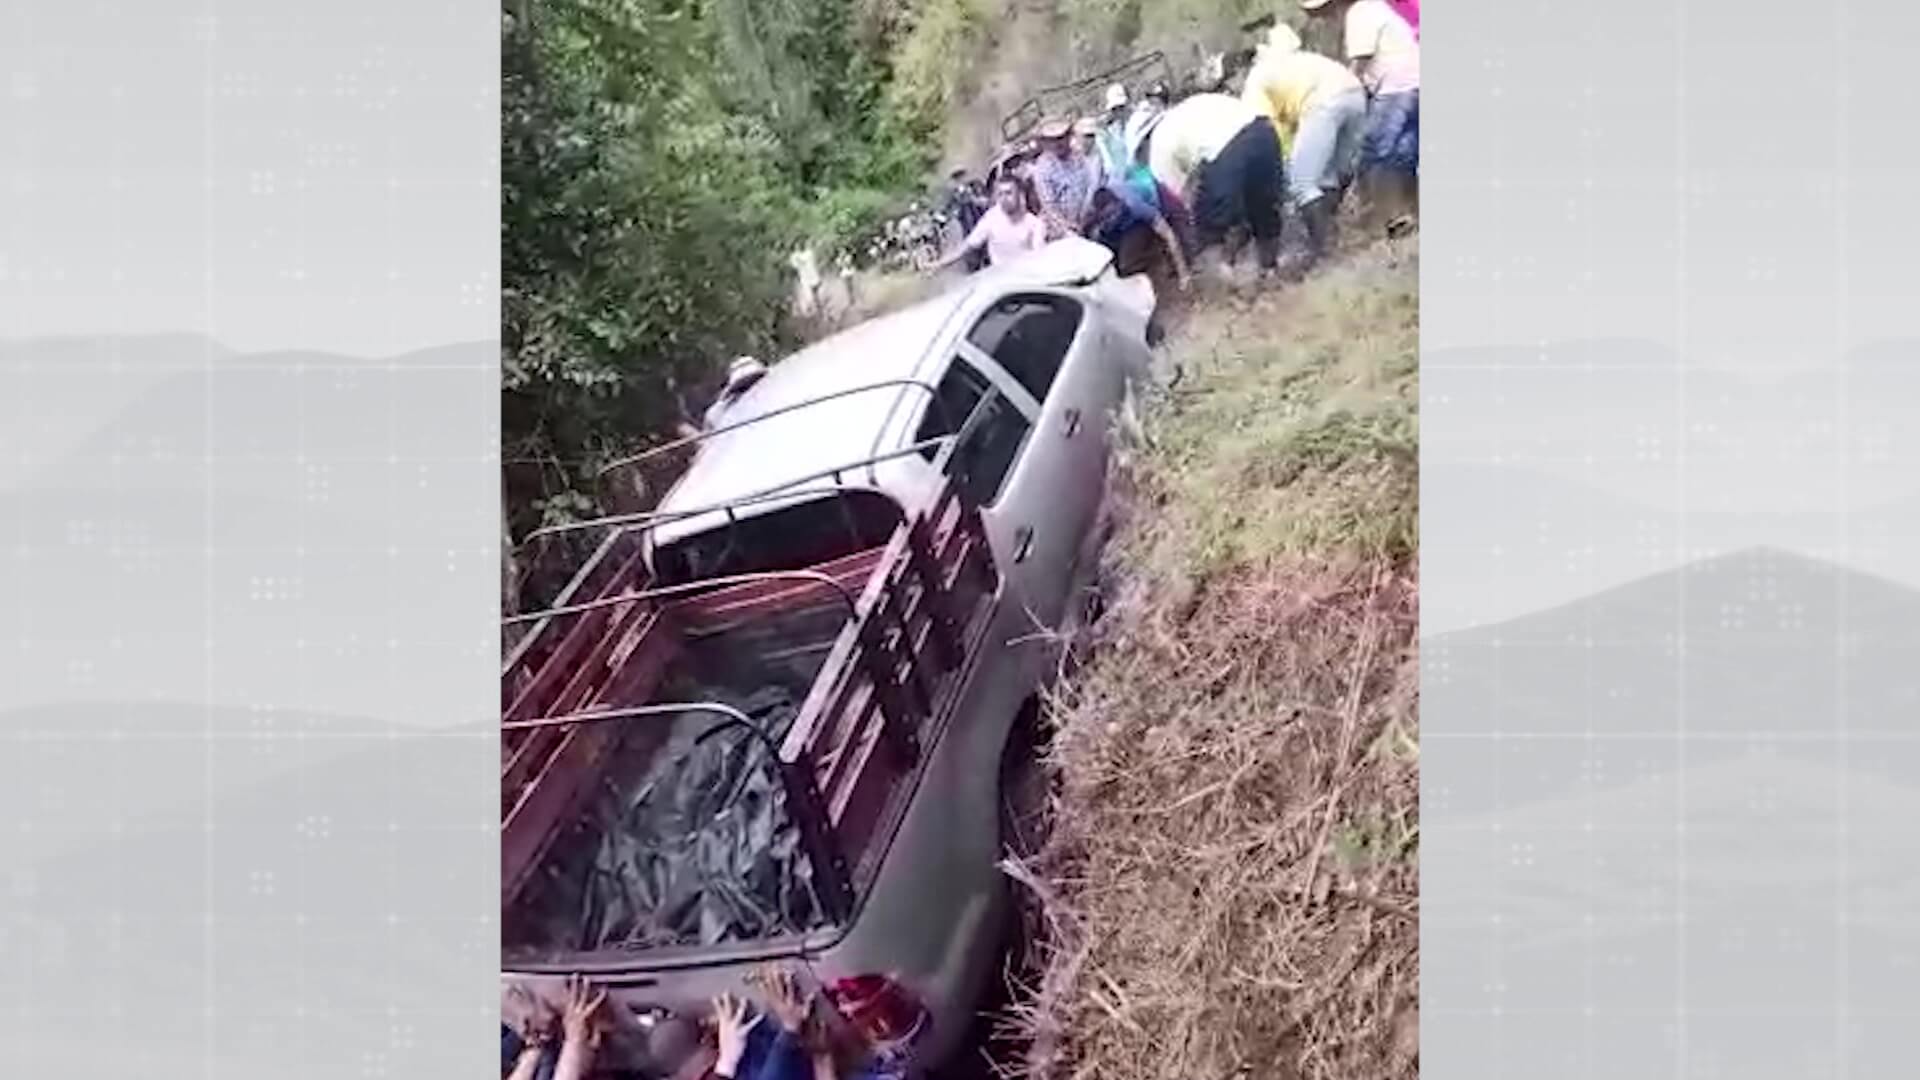 Campesinos sacan vehículo que cayó a un abismo